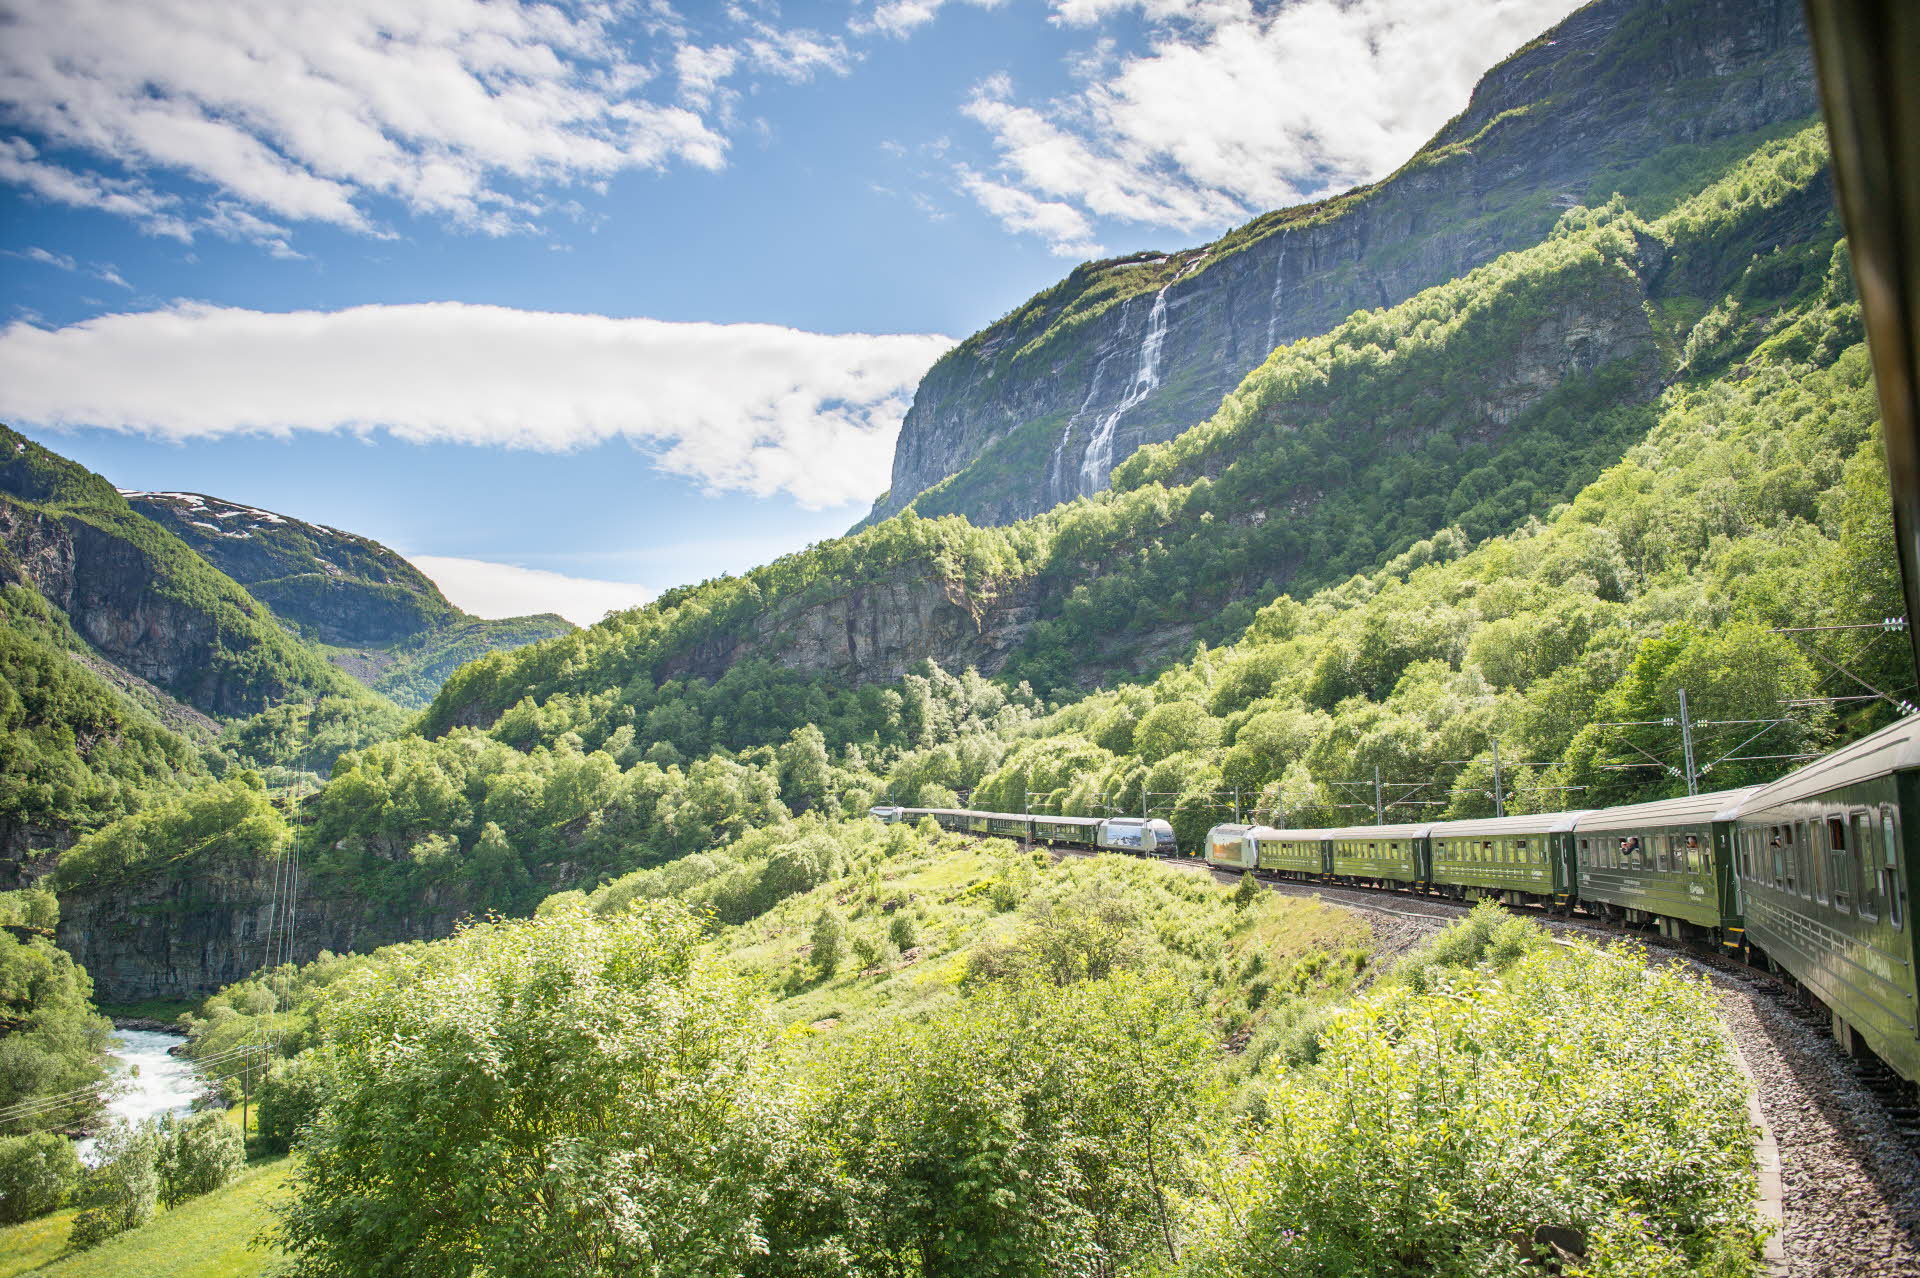 Blick auf das Flåmsdalen und zwei sich treffende Züge vom Zugfenster aus. Grüne Hänge, blauer Himmel und ein Wasserfall. 